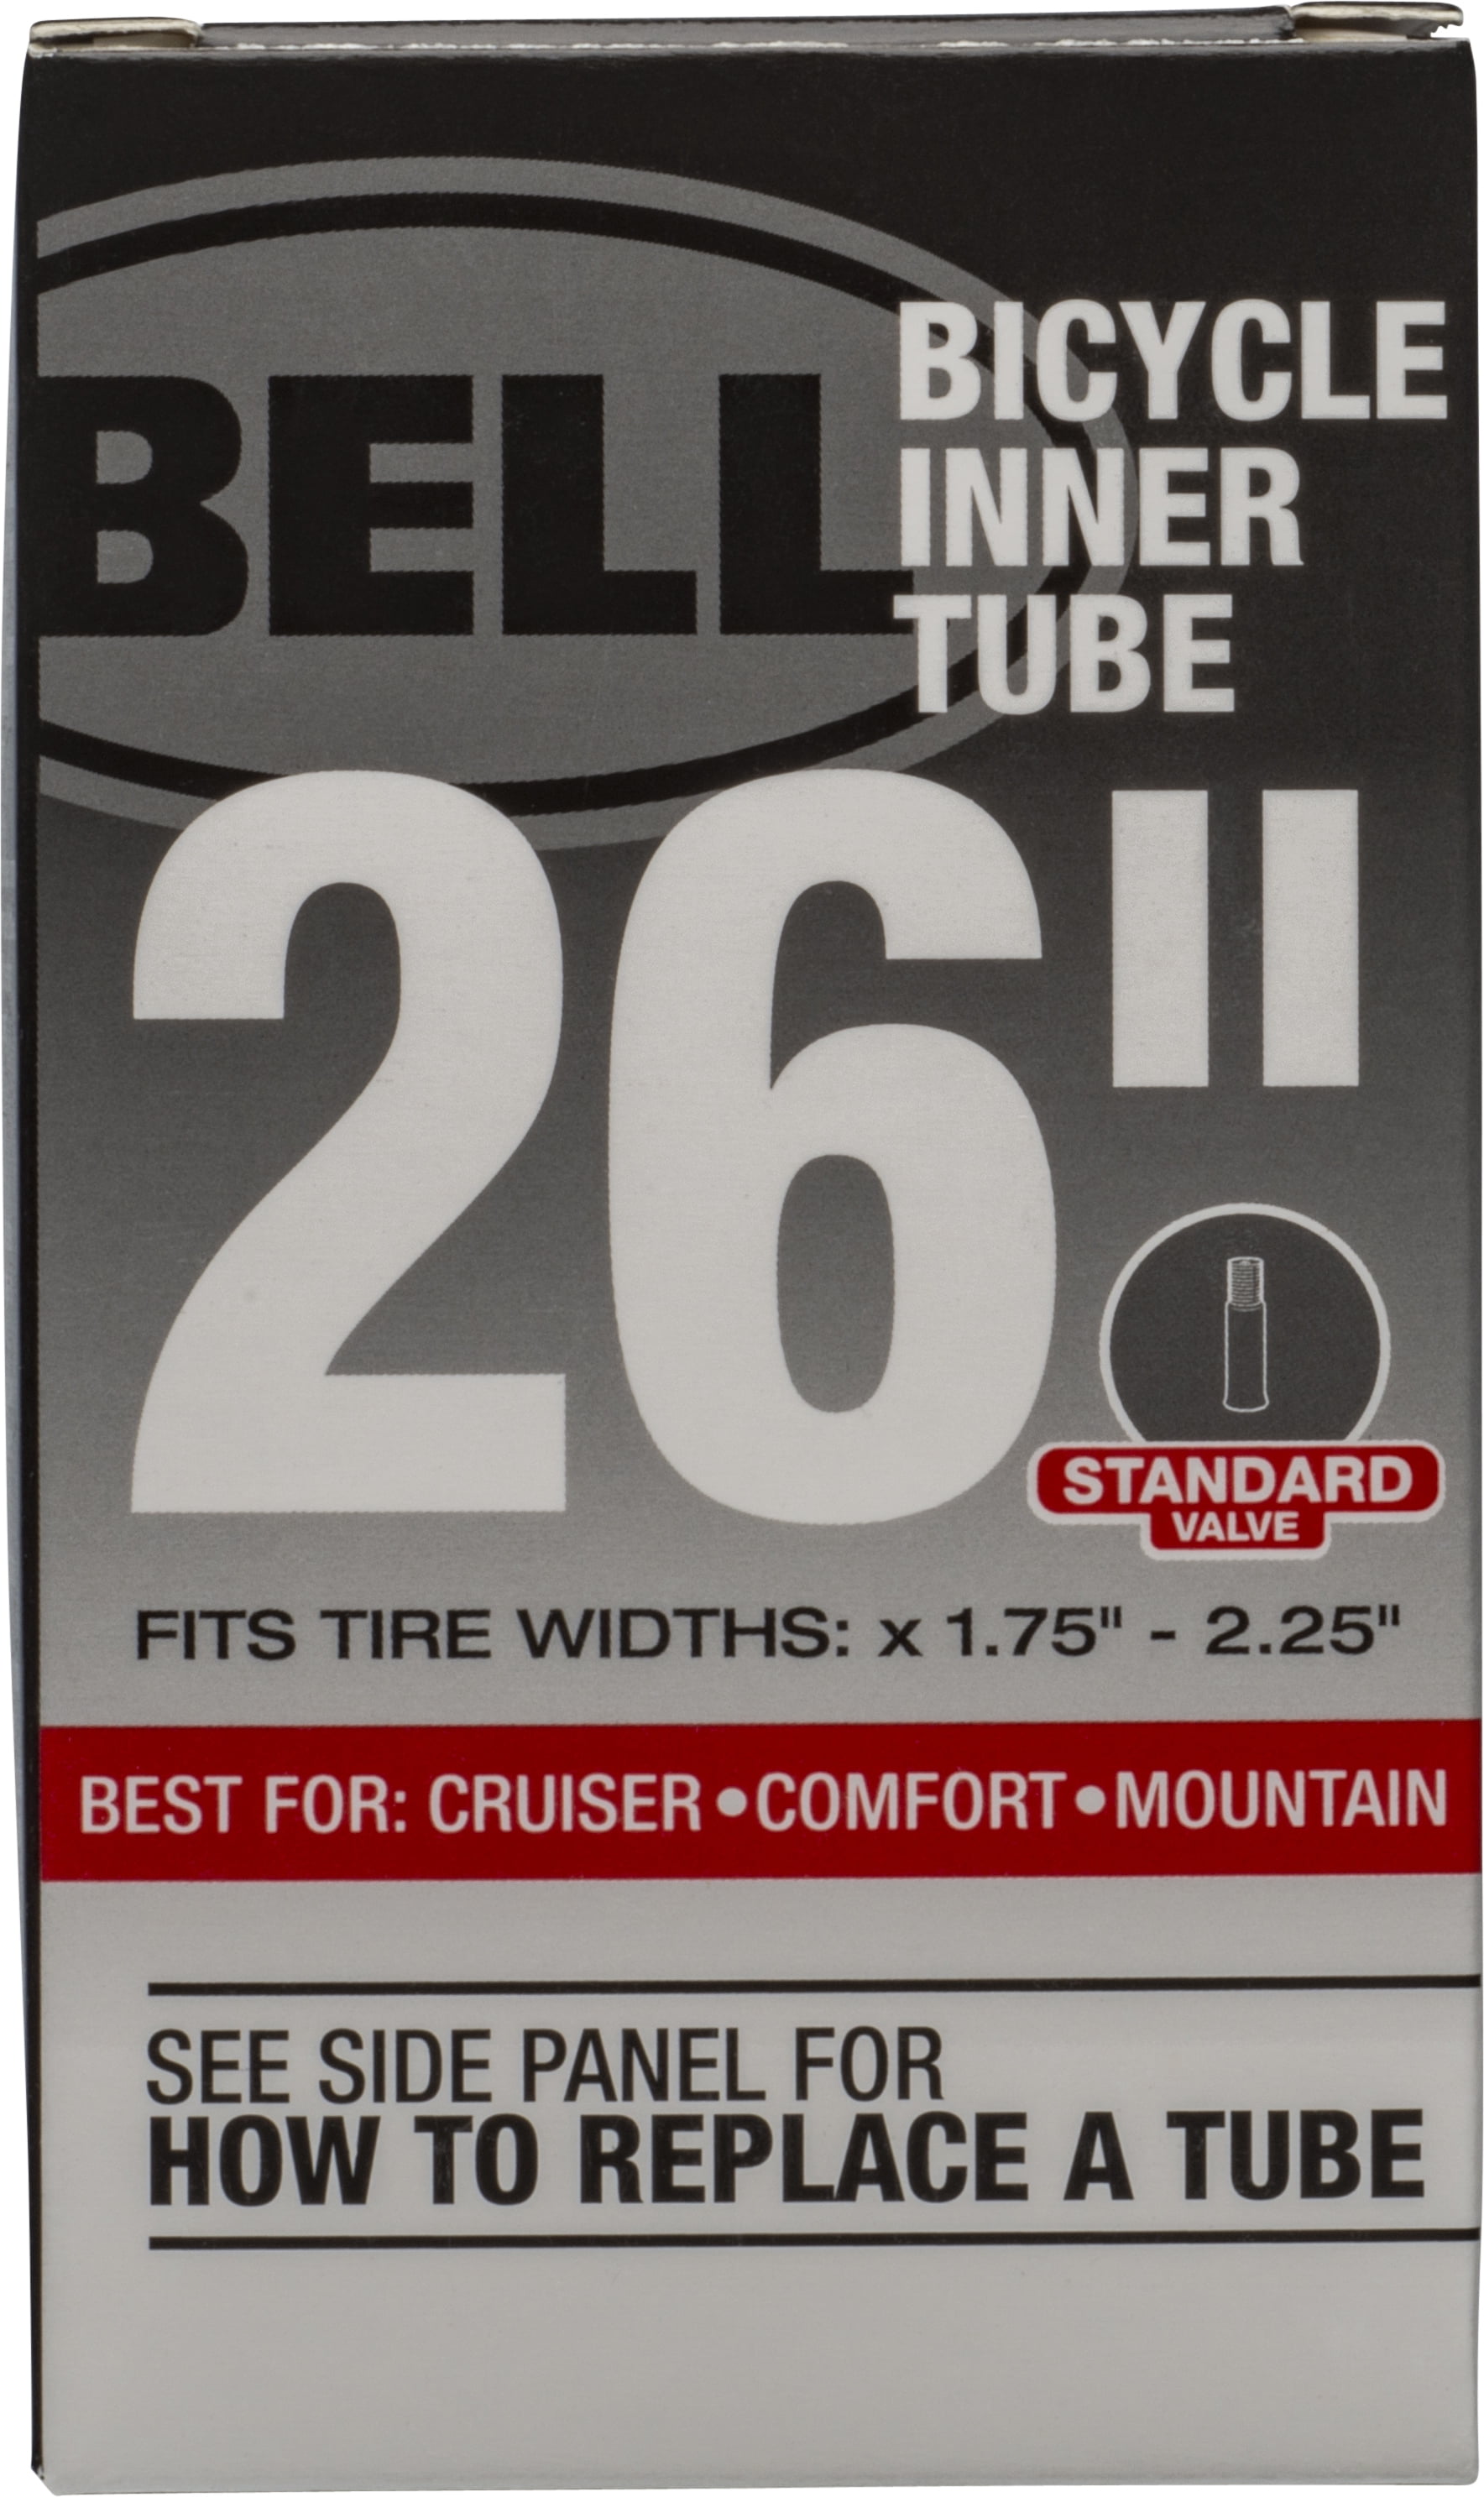 2 Bell 14" Bicycle Inner Tube Standard Schrader Valve for BMX Cruiser Bikes for sale online